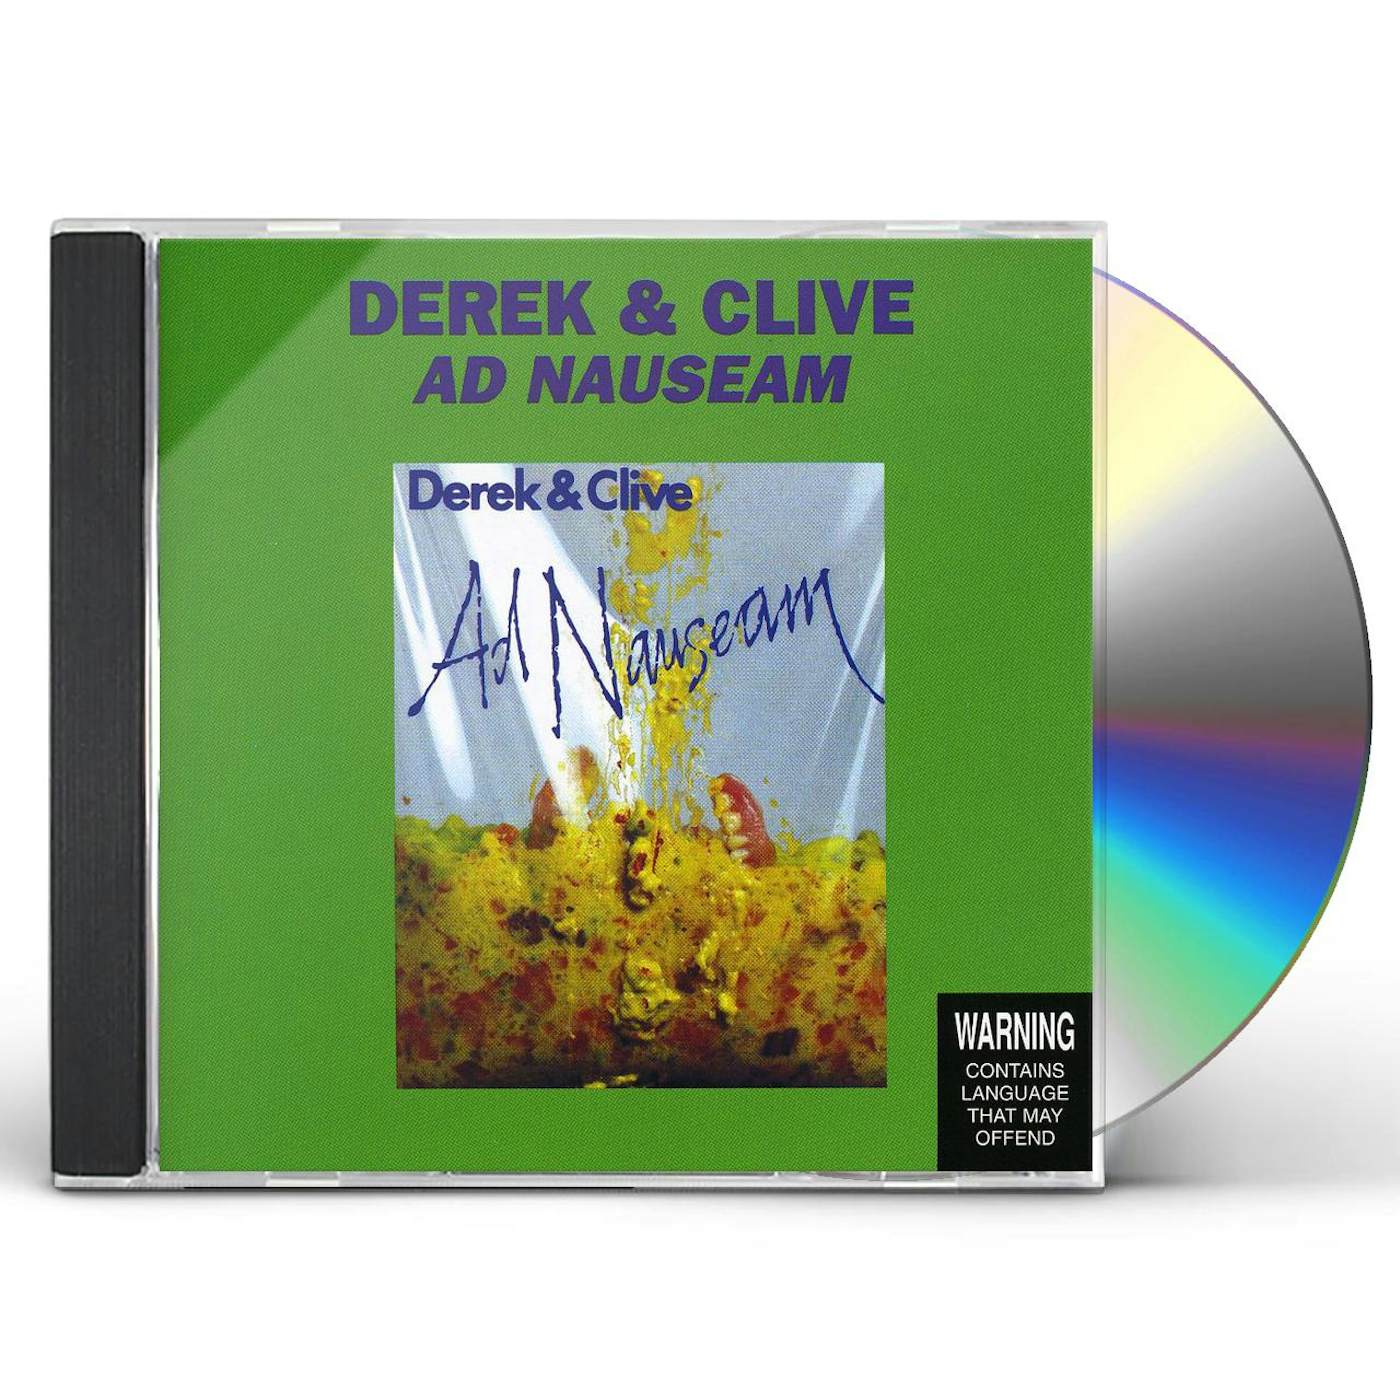 Derek & Clive AD NAUSEAM CD